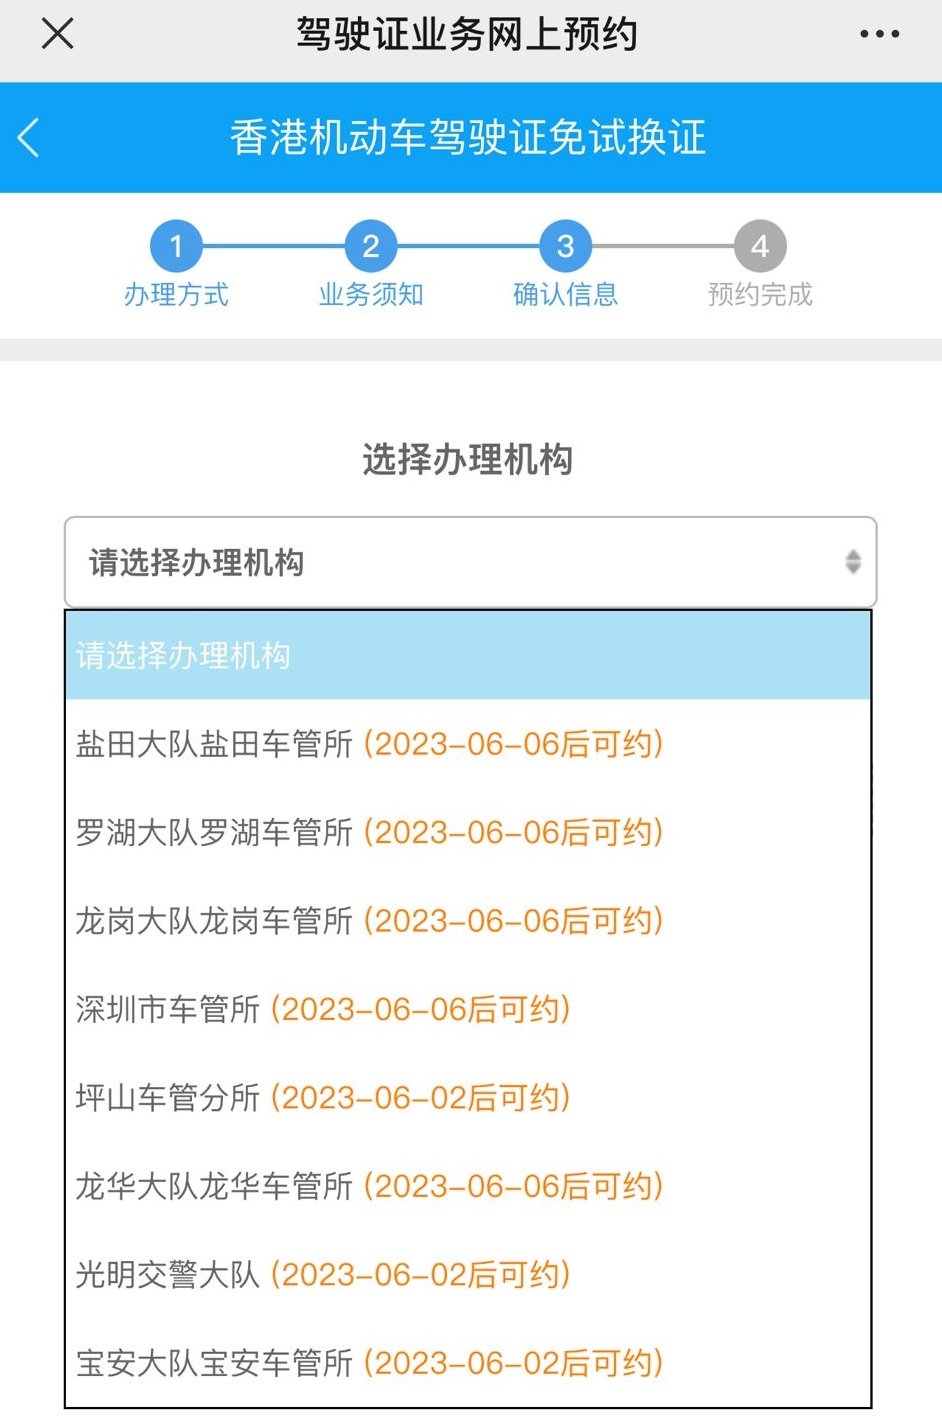 深圳羅湖車管所預約十分爆滿，要等2至3個星期才有預約位。(5月23日預約情況)